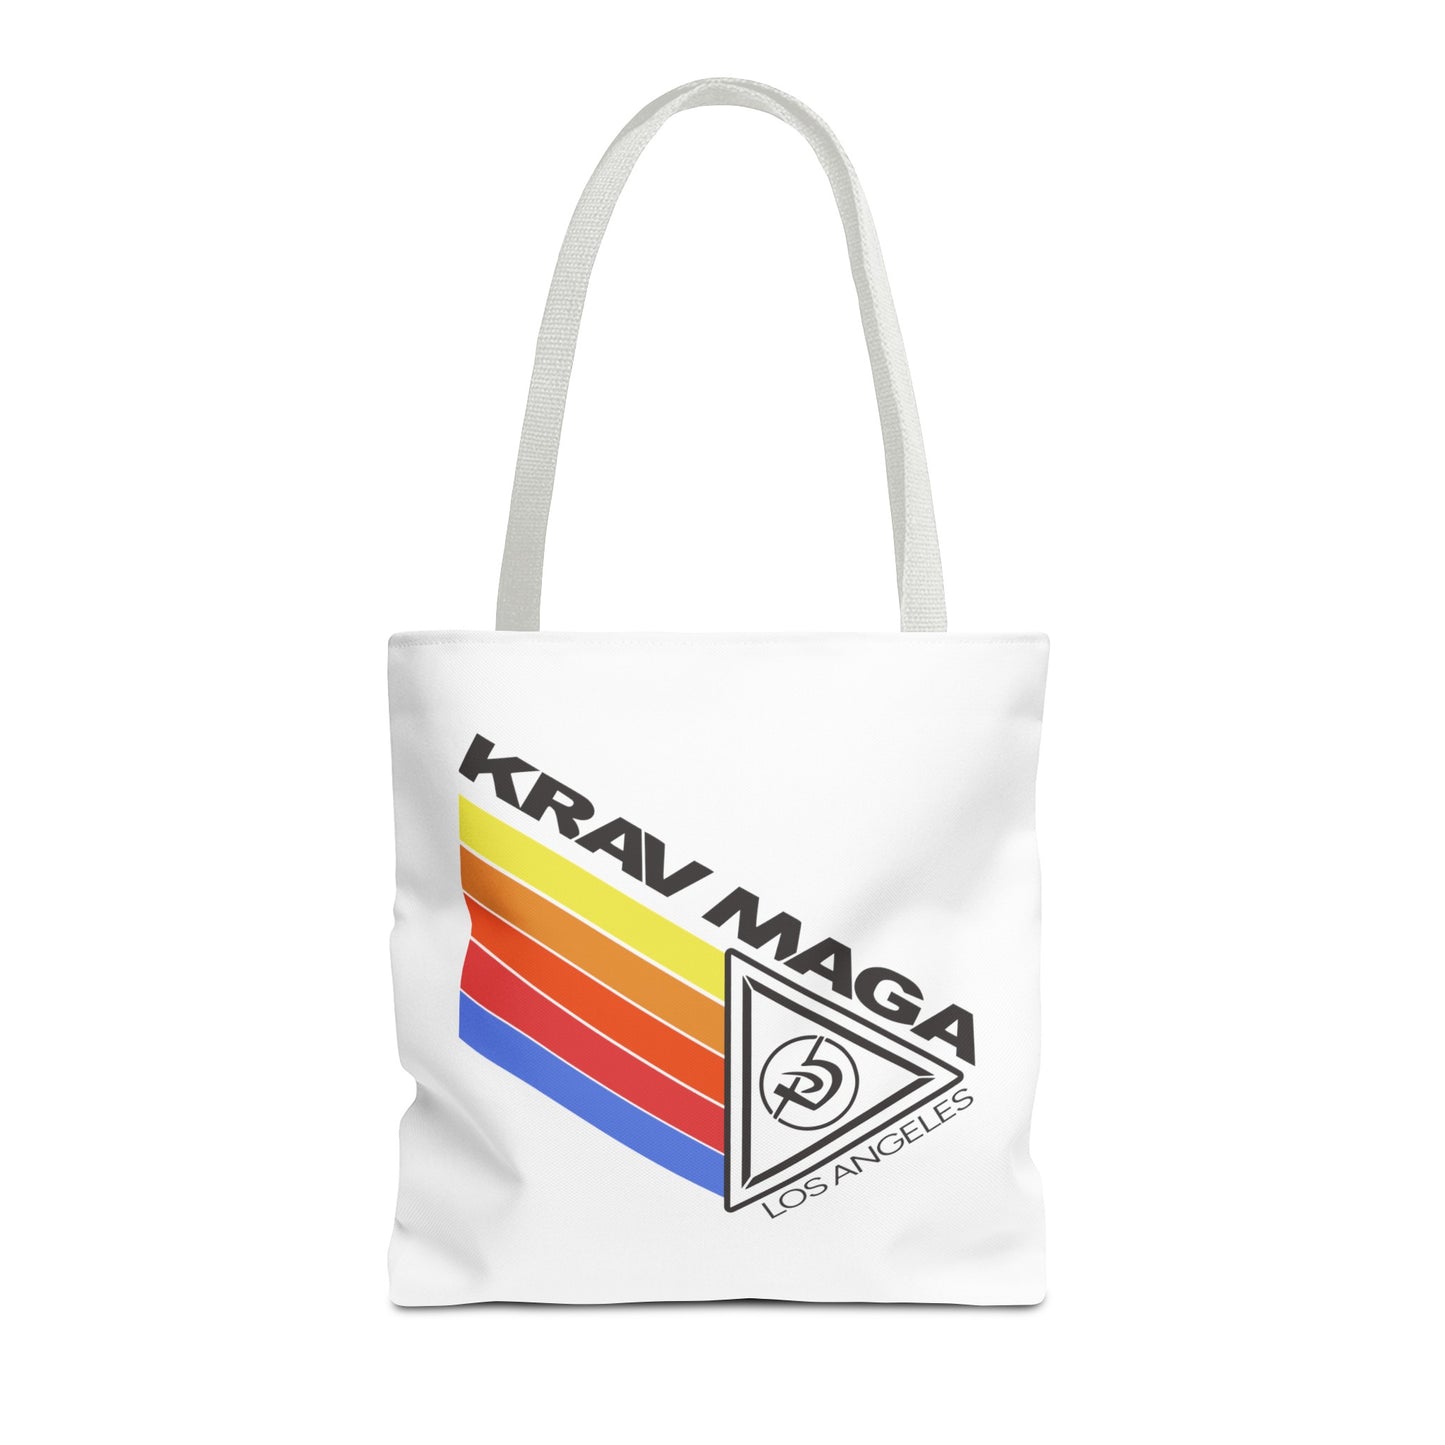 KMW Classic - Tote Bag